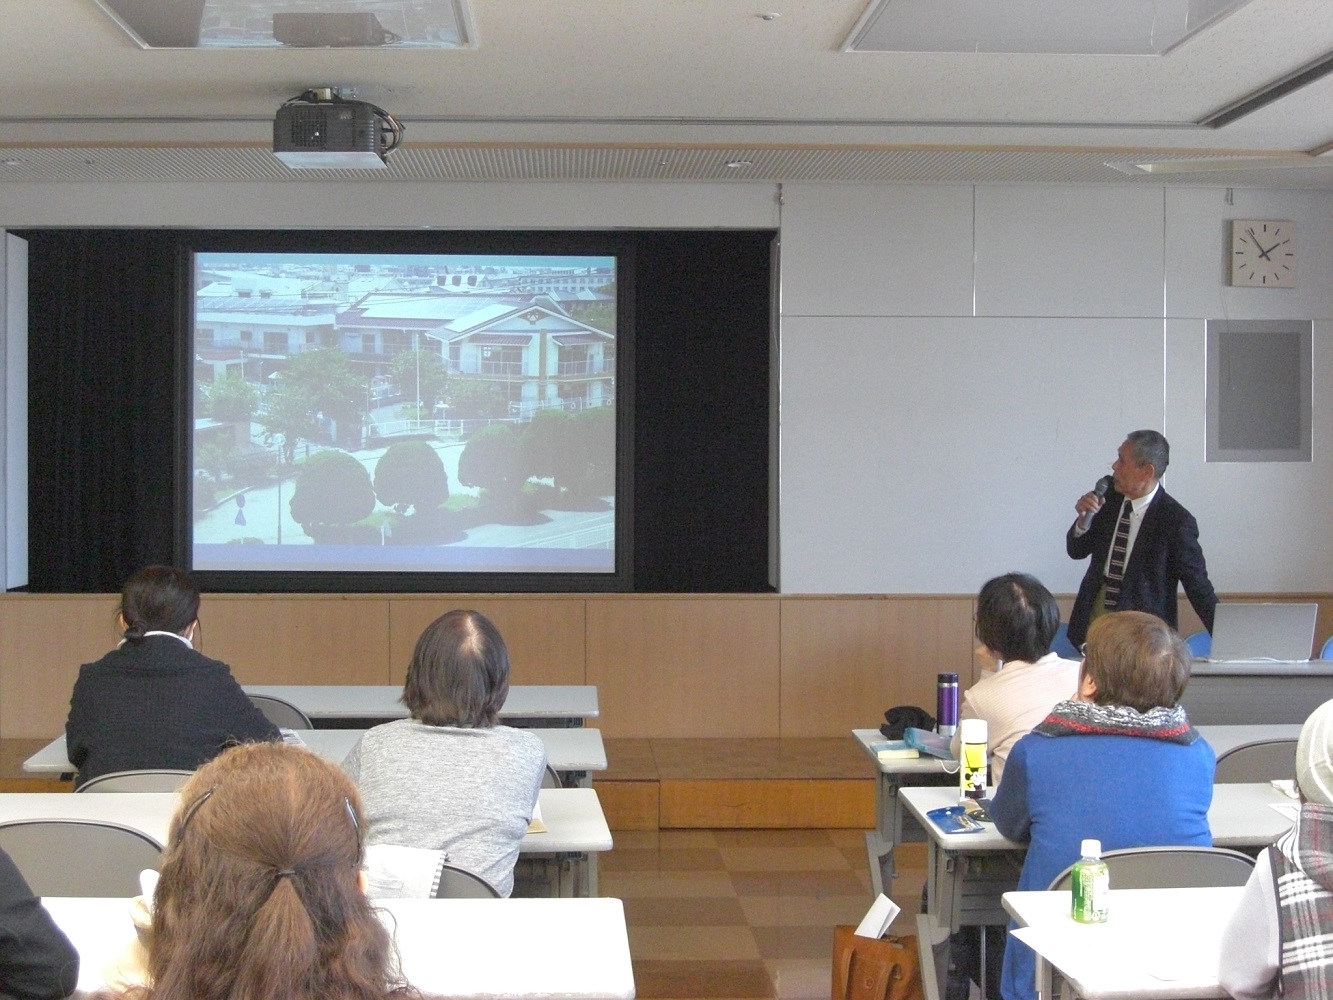 令和元年度第5回フォローアップ研修会「活動先探索講座～自分に合った活動を見つけよう～in福岡」を開催しました